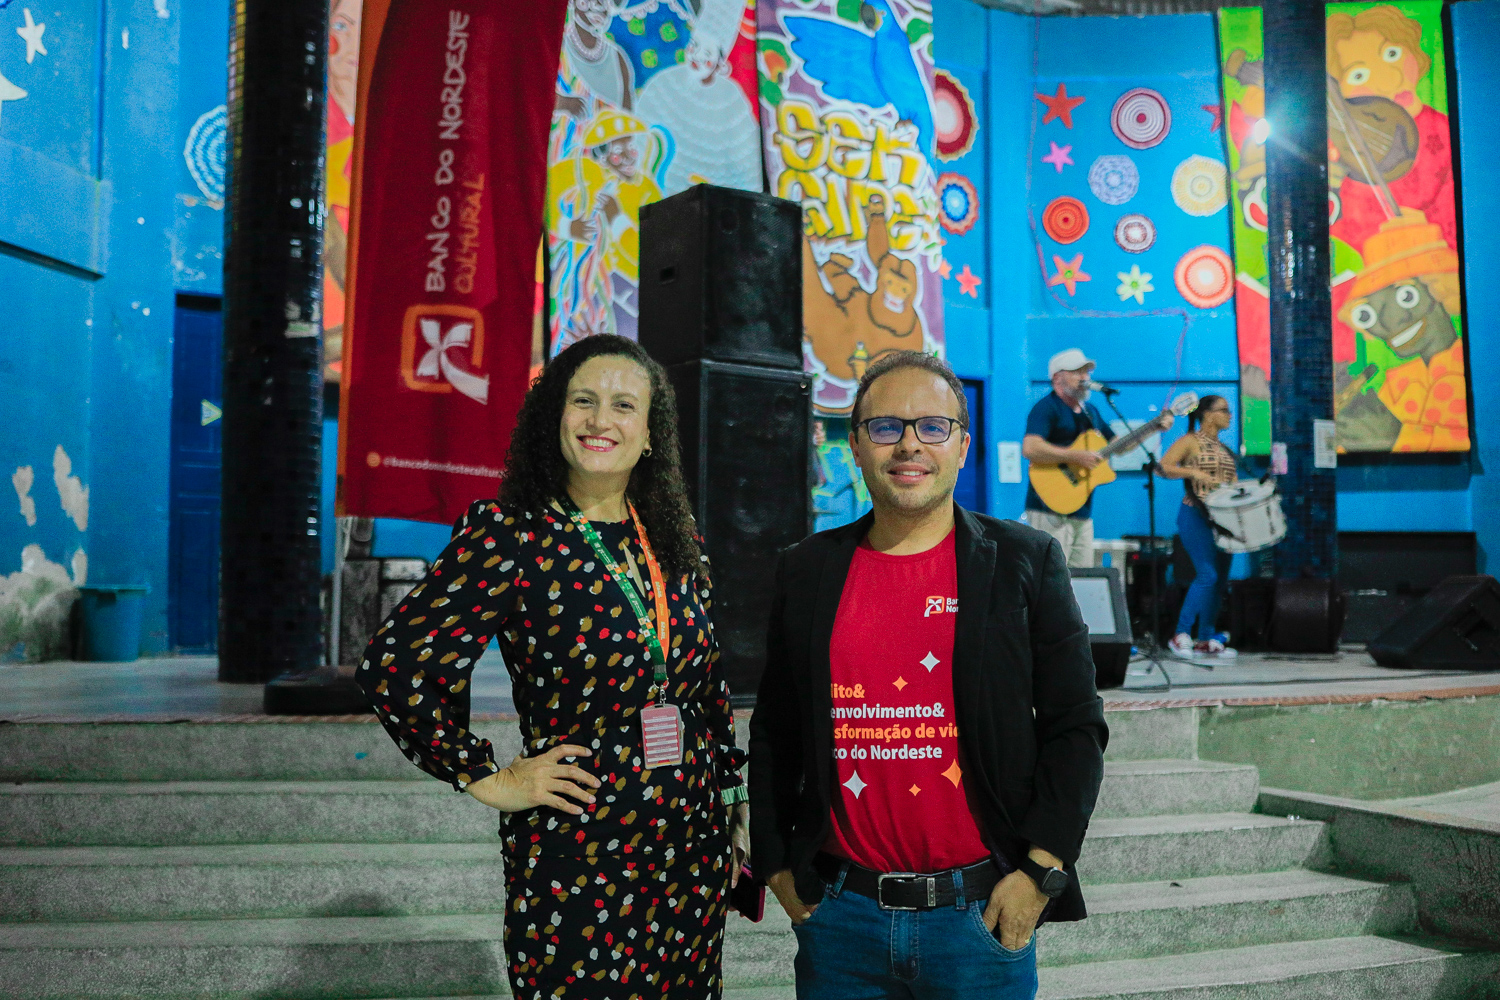 Amanda Dias e Lenin Falcão são representantes do Banco do Nordeste. (foto: Elisa Lemos/Ascom UFS)